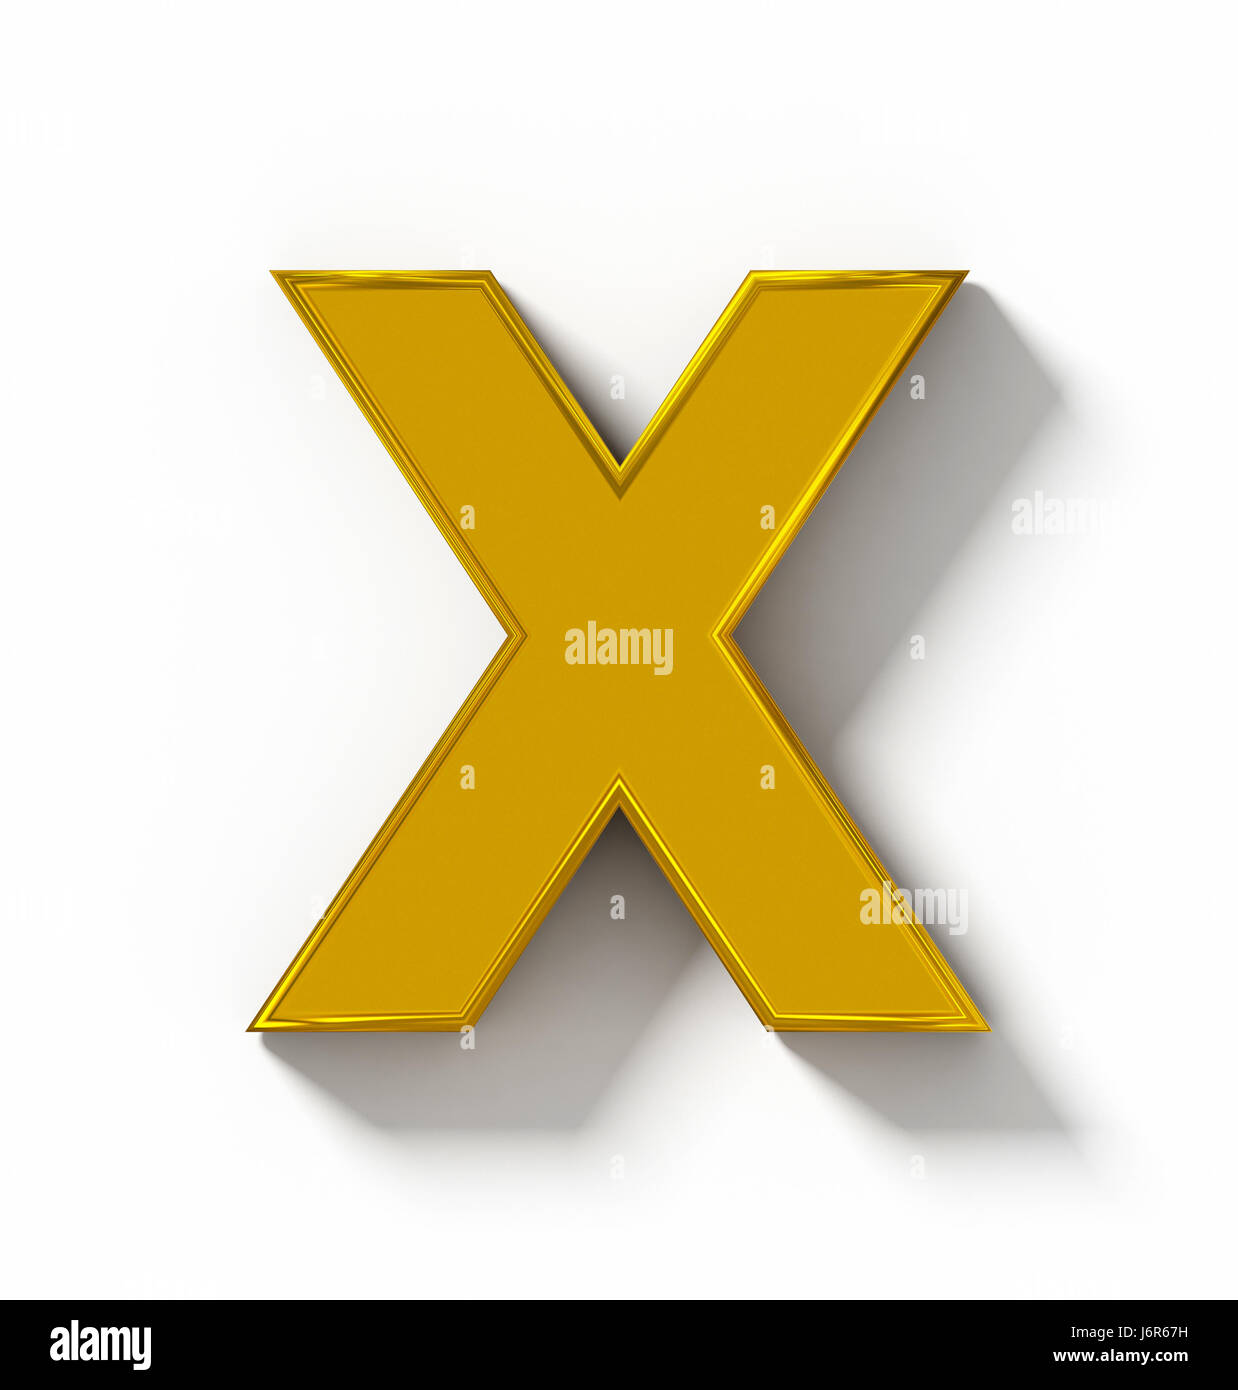 Lettera X 3D golden isolato su bianco con ombra - proiezione ortogonale - 3d rendering Foto Stock